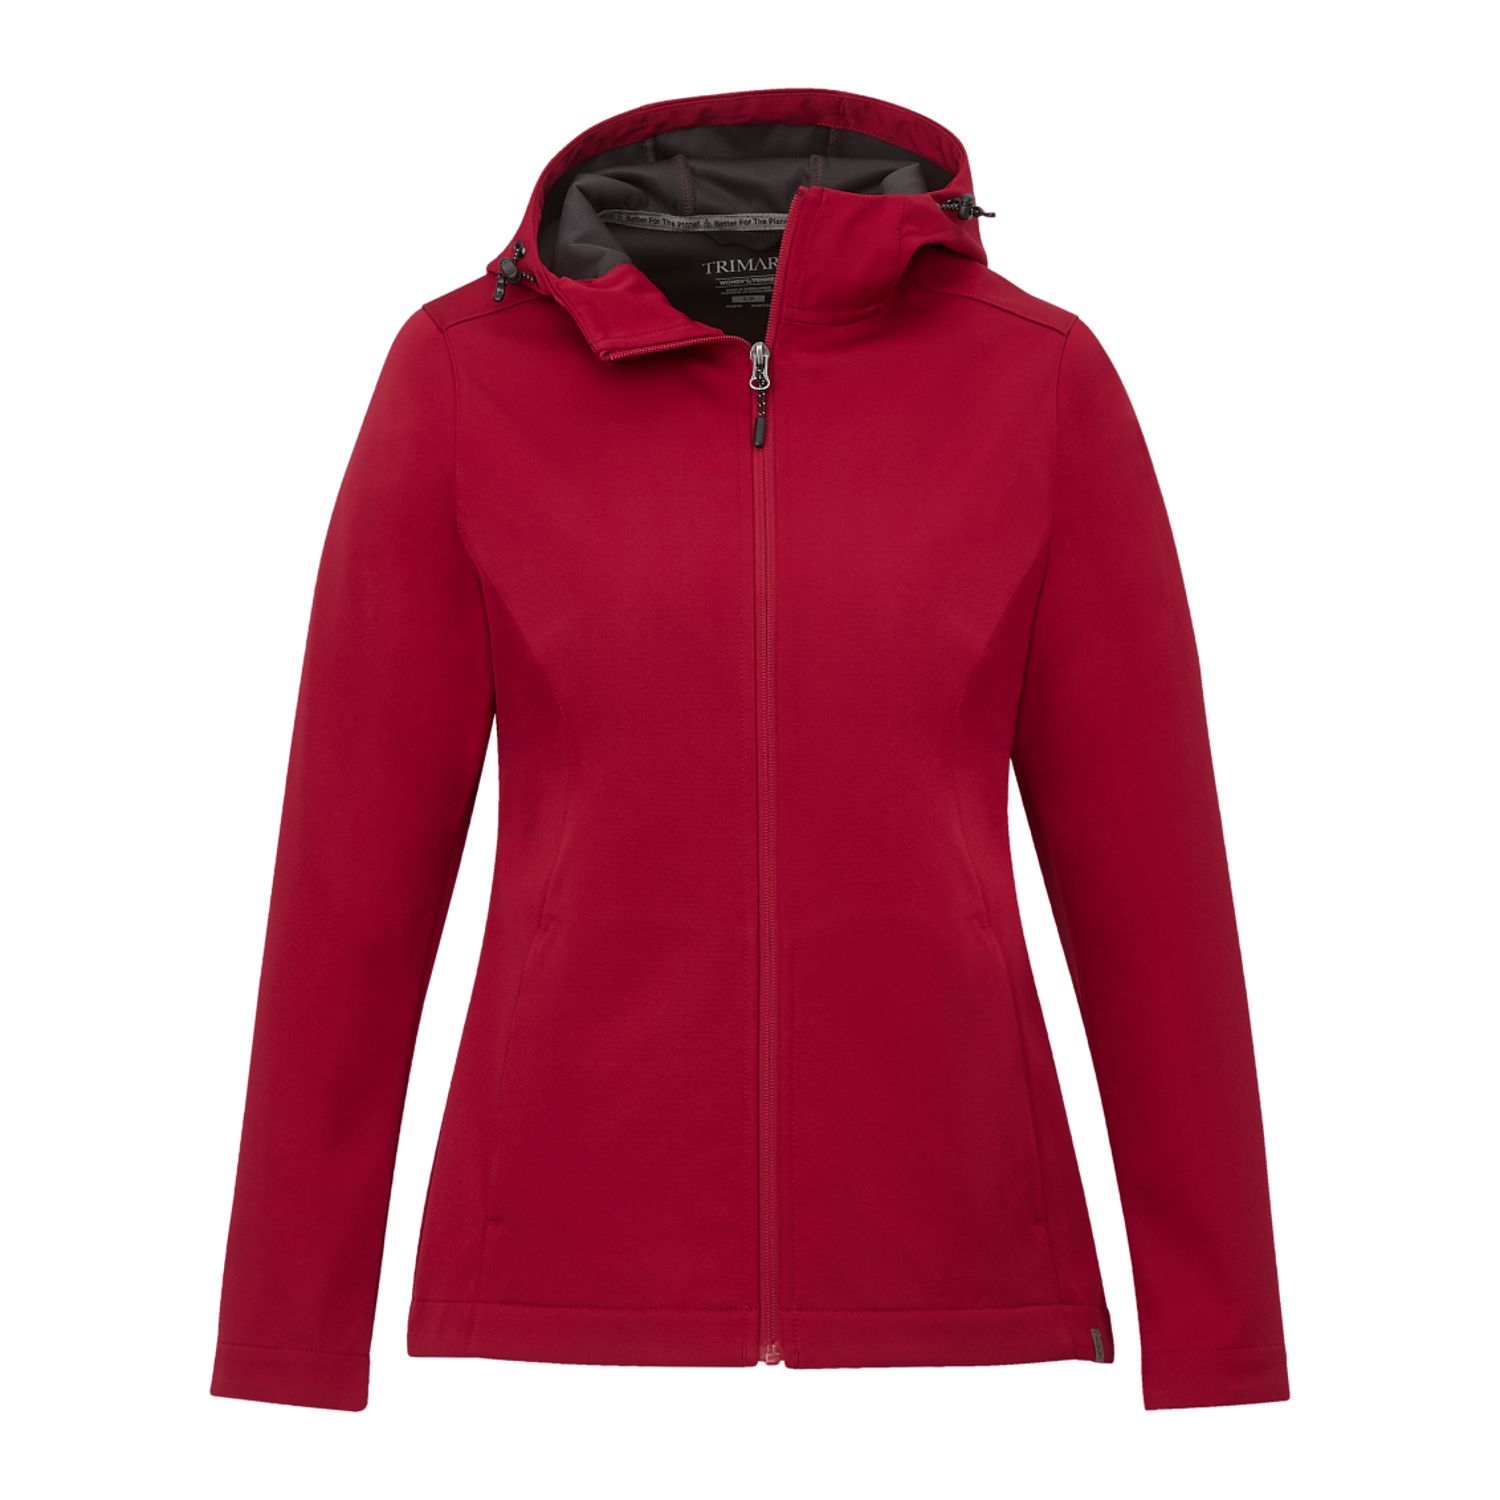 Trimark TM99351 - Women's LEFROY Eco Softshell Jacket